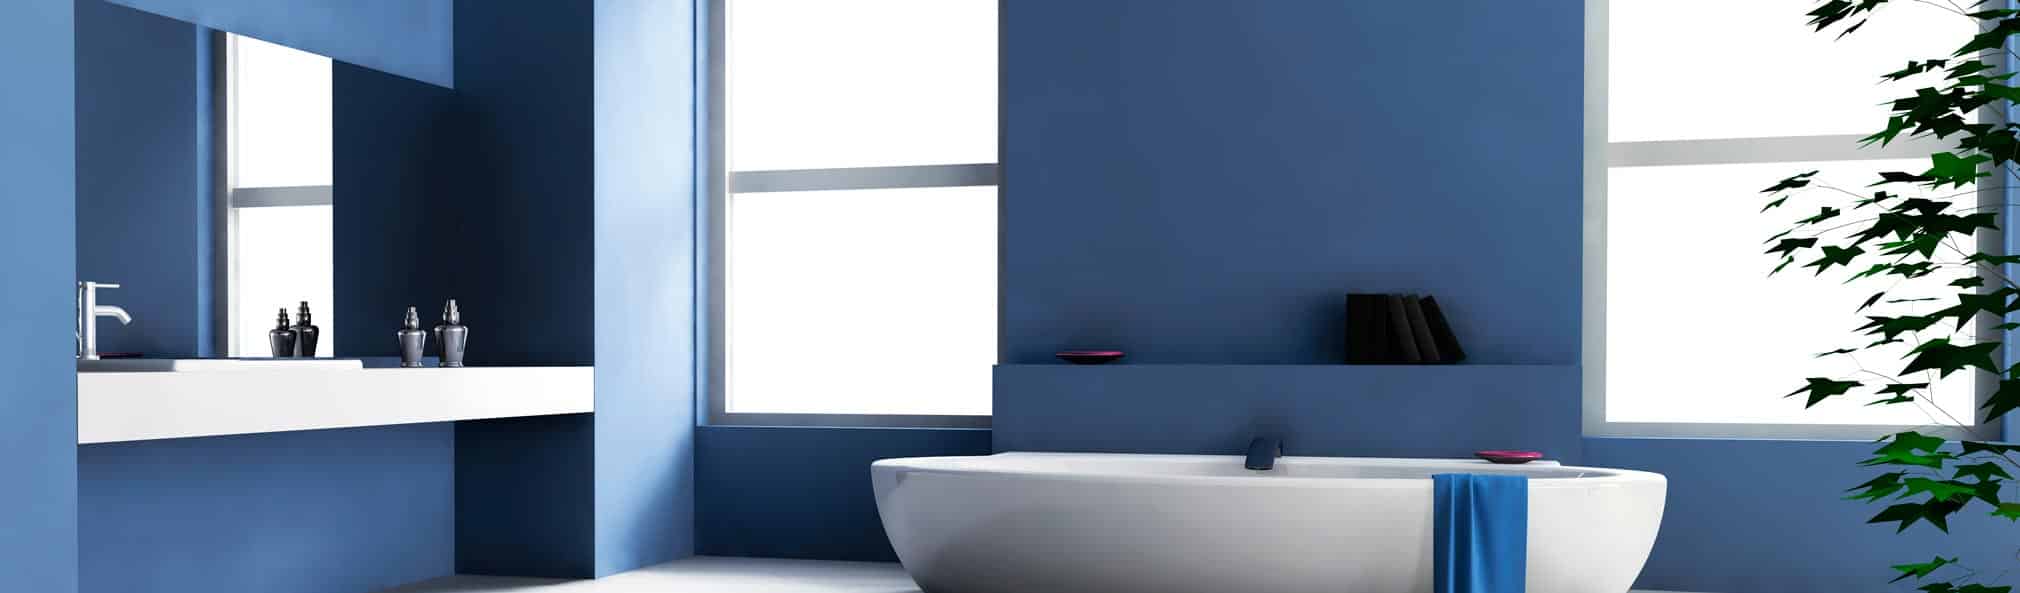 Remove A No Bathroom Light Fixture, How To Get Bathroom Fixtures Off Wall